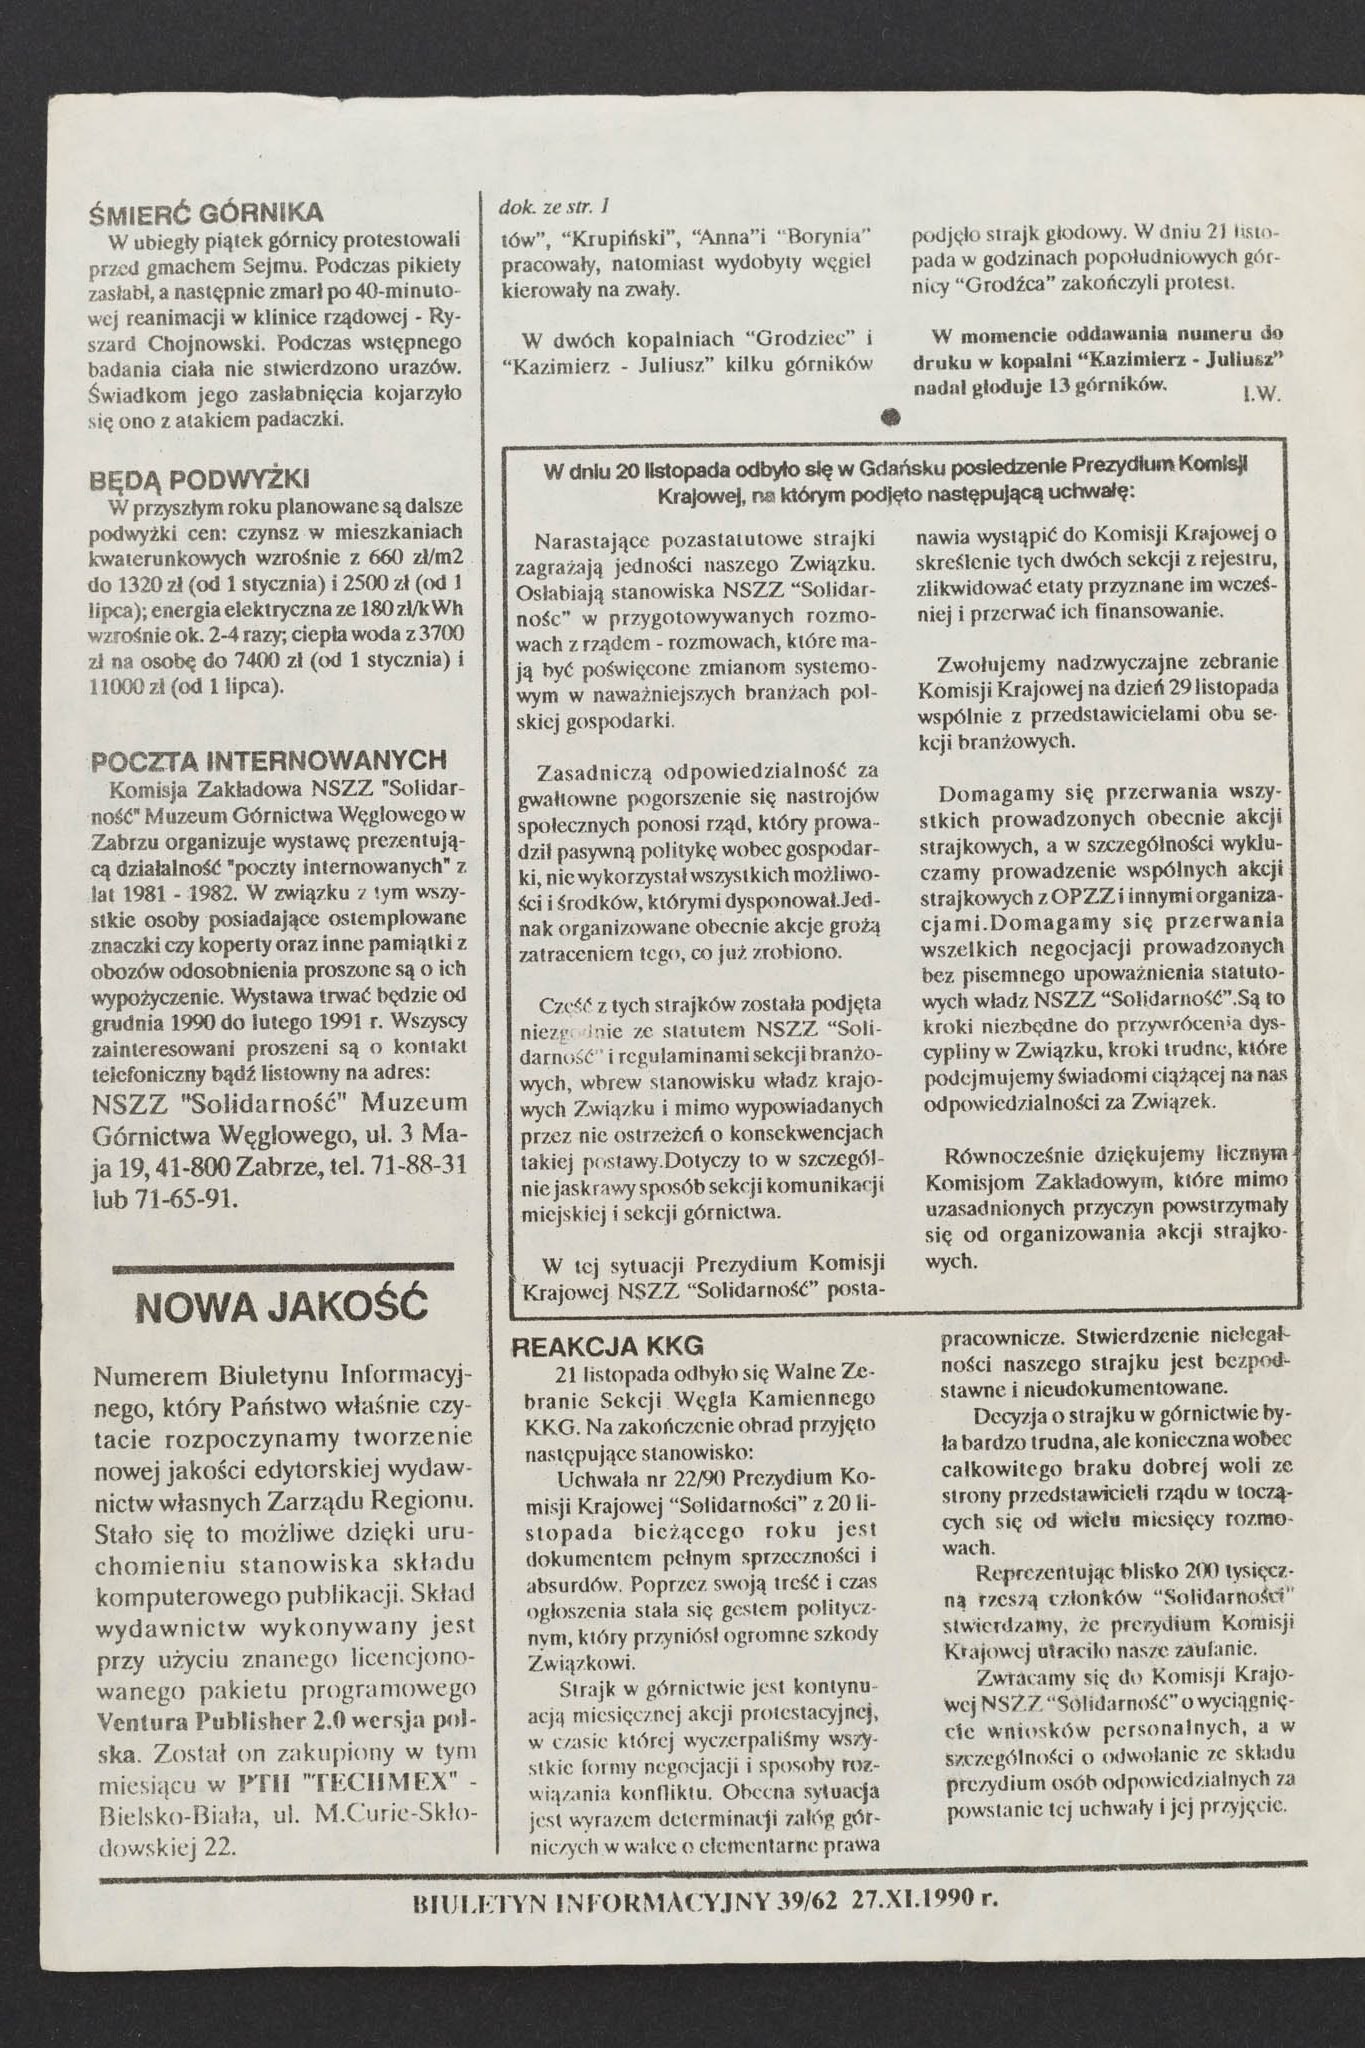 Biuletyn informacyjny region śląsko-dąbrowski nr 62 27.11.1990